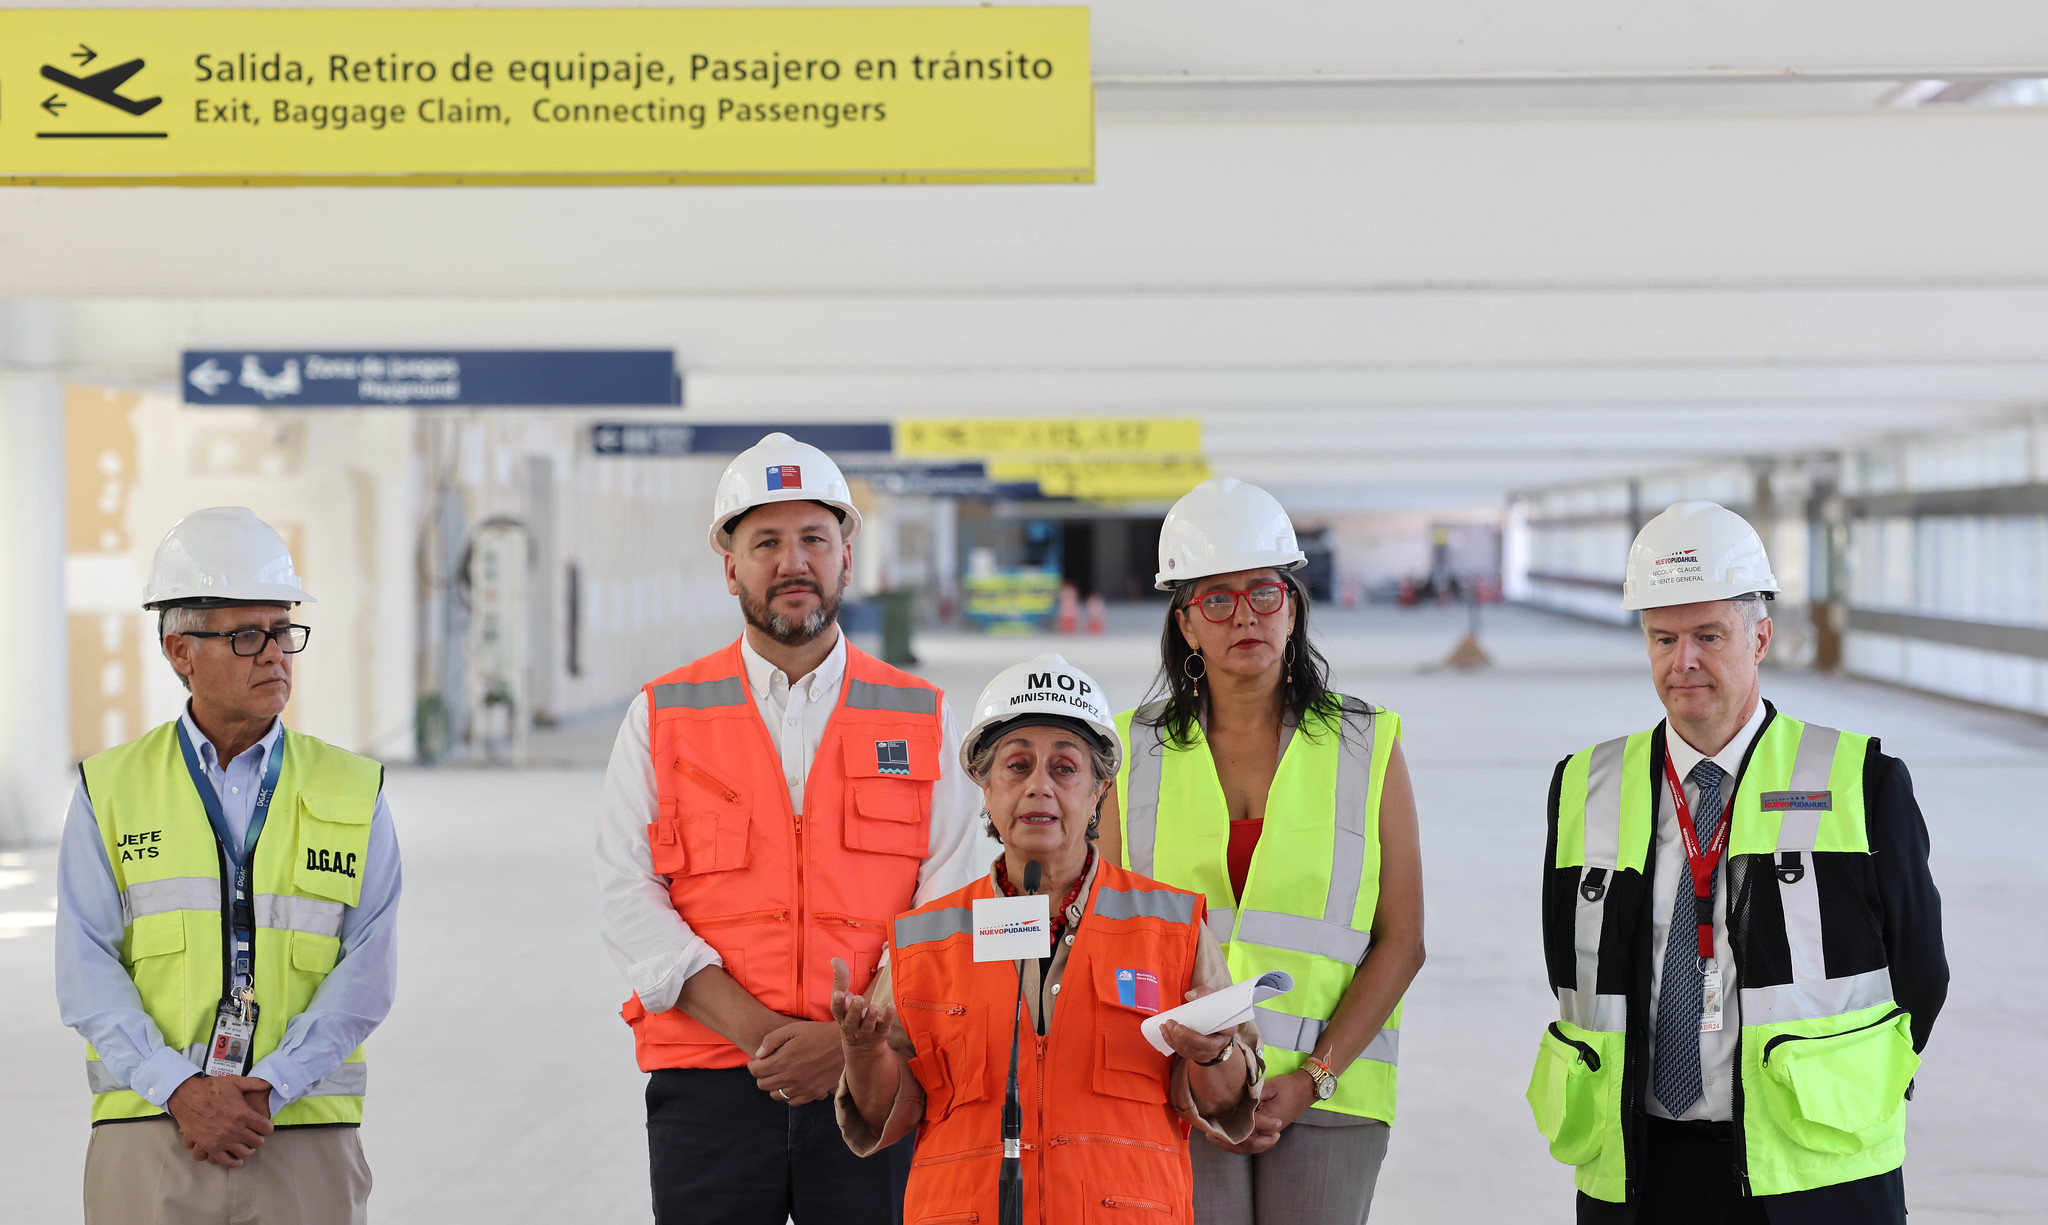 Aeropuerto de Santiago recupera demanda pre pandemia: casi 4,9 millones de pasajeros viajaron durante enero y febrero 